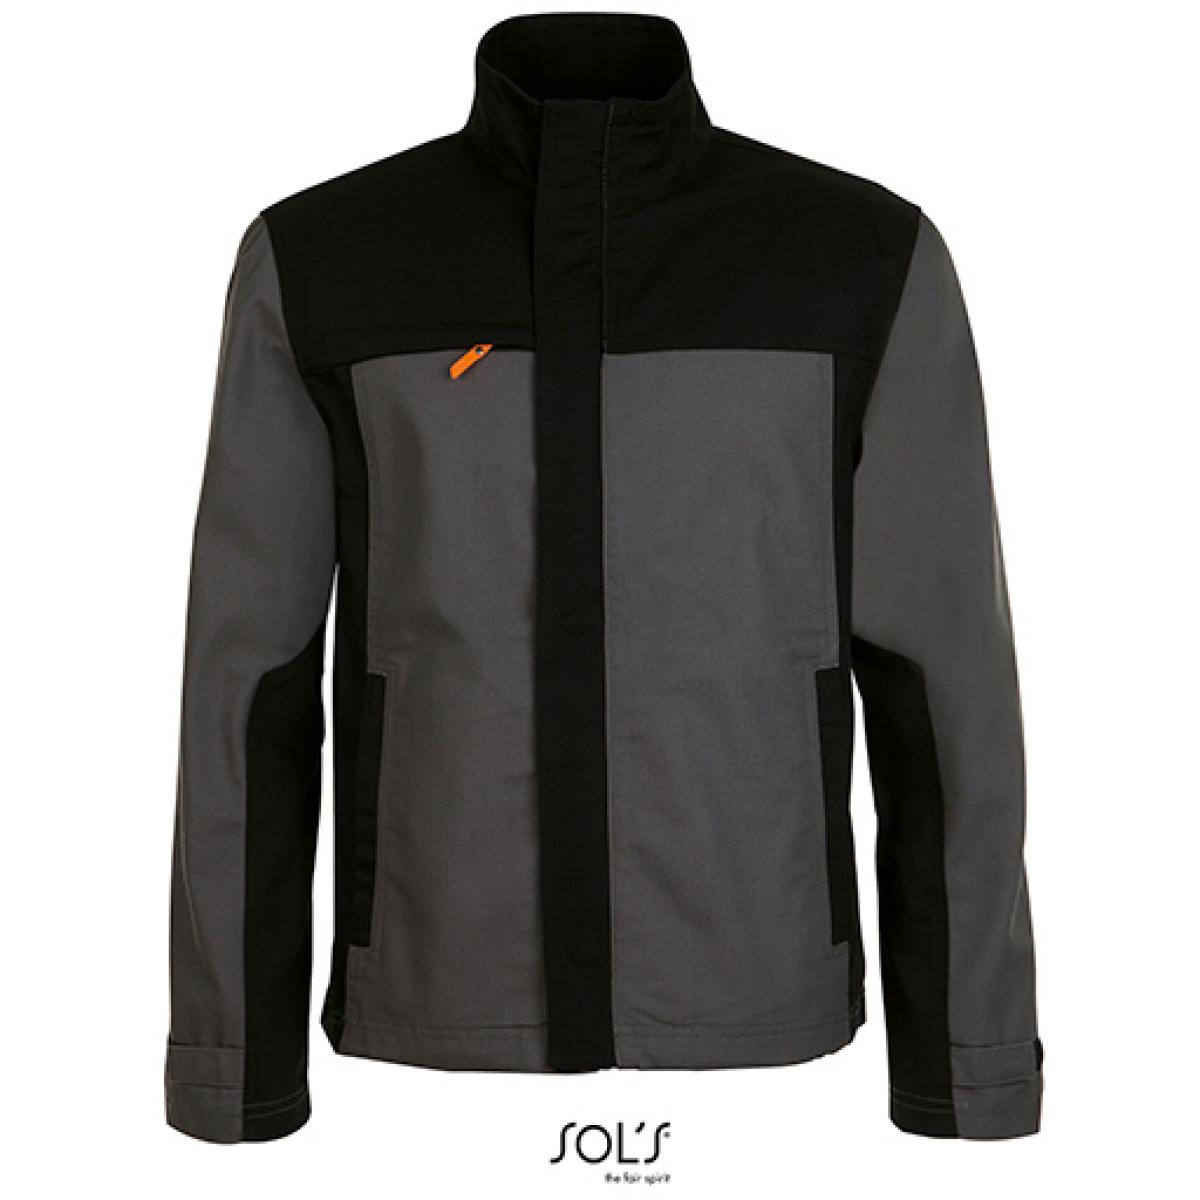 Hersteller: SOLs ProWear Herstellernummer: 01565 Artikelbezeichnung: Herren Workwear Jacket - Impact Pro Arbeitsjacke Farbe: Dark Grey (Solid)/Black